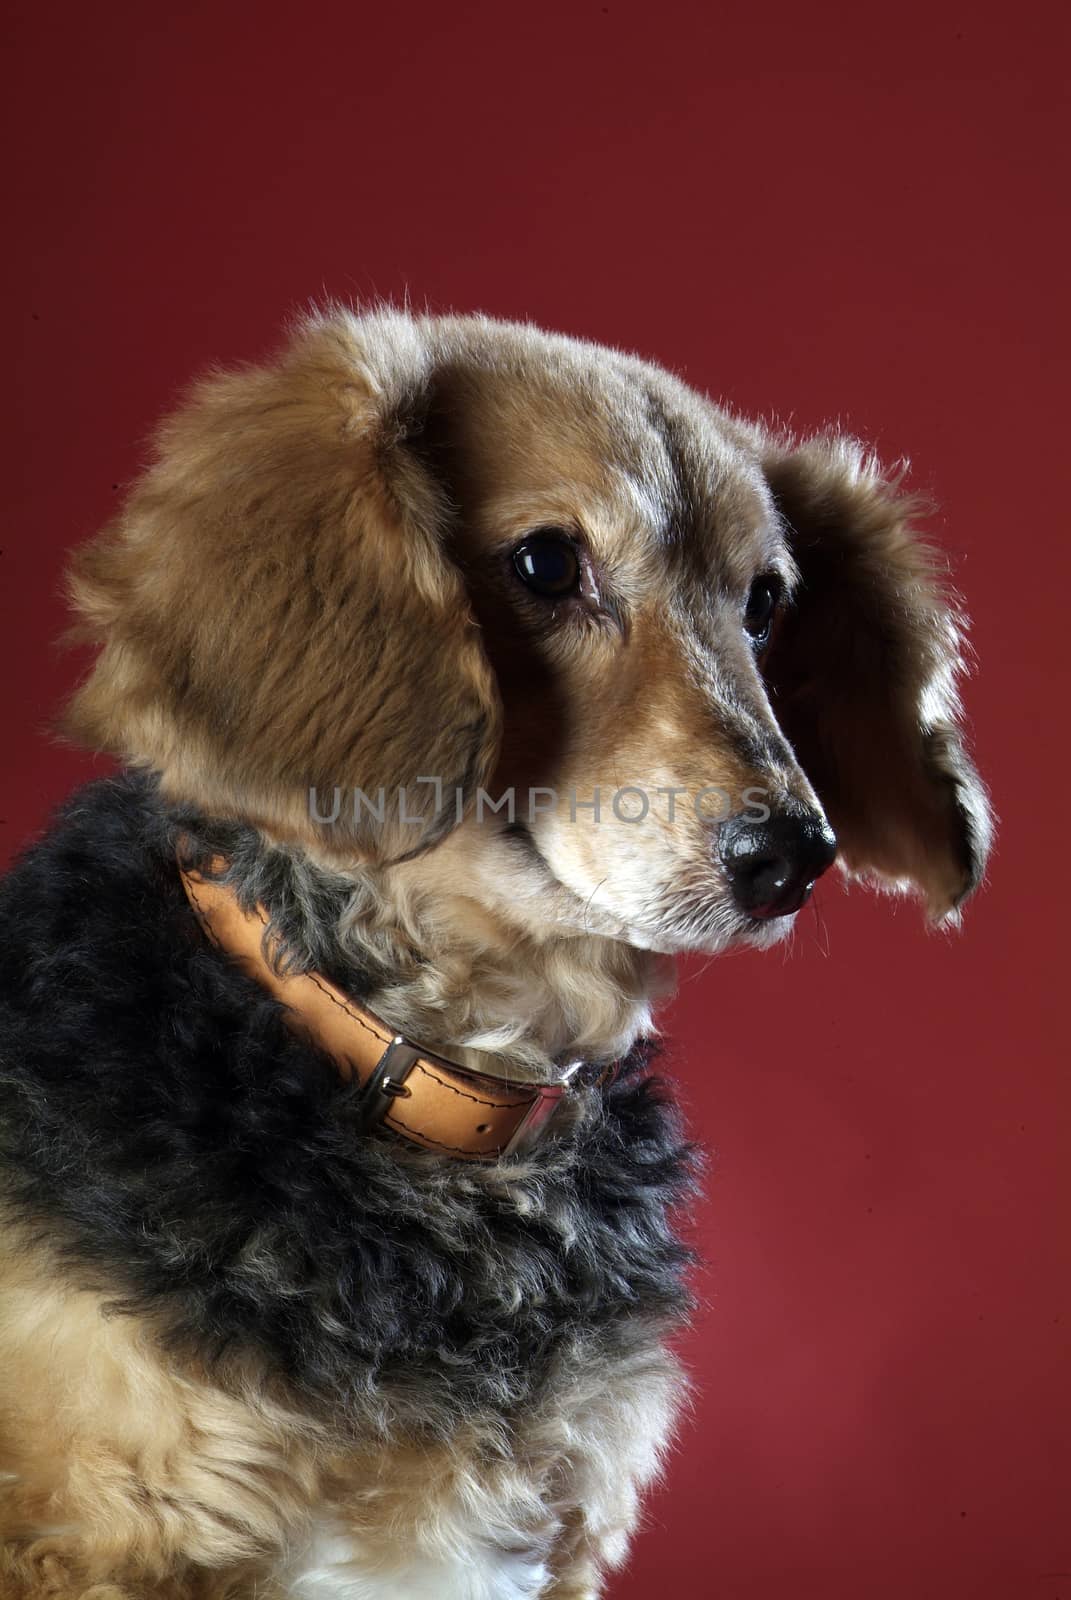 Italian mongrel dog 5996 by diecidodici